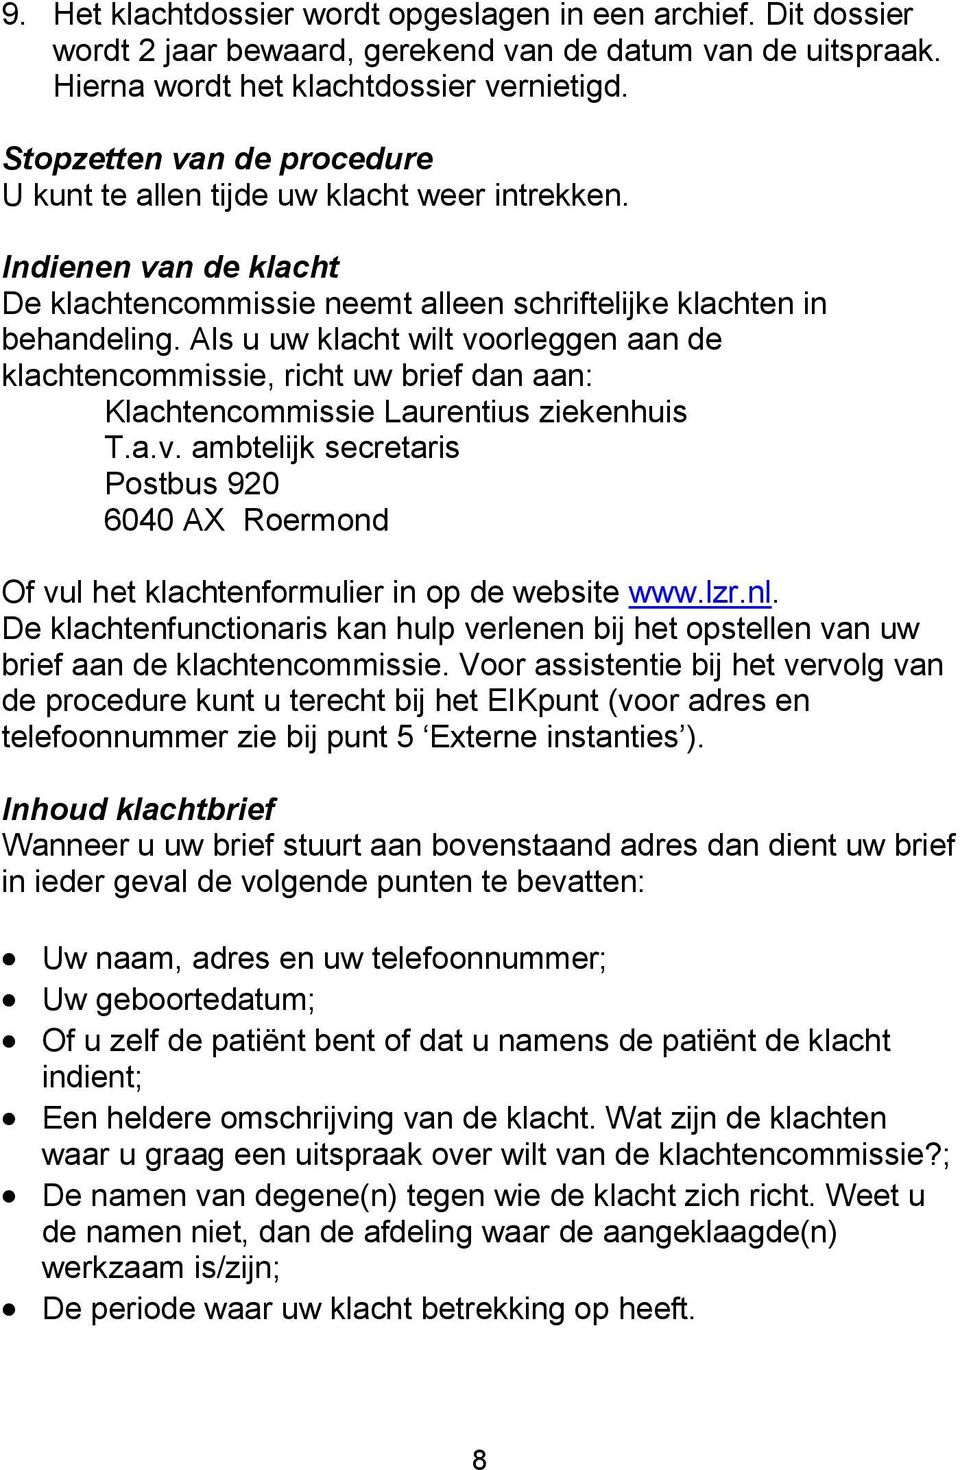 Als u uw klacht wilt voorleggen aan de klachtencommissie, richt uw brief dan aan: Klachtencommissie Laurentius ziekenhuis T.a.v. ambtelijk secretaris Postbus 920 6040 AX Roermond Of vul het klachtenformulier in op de website www.